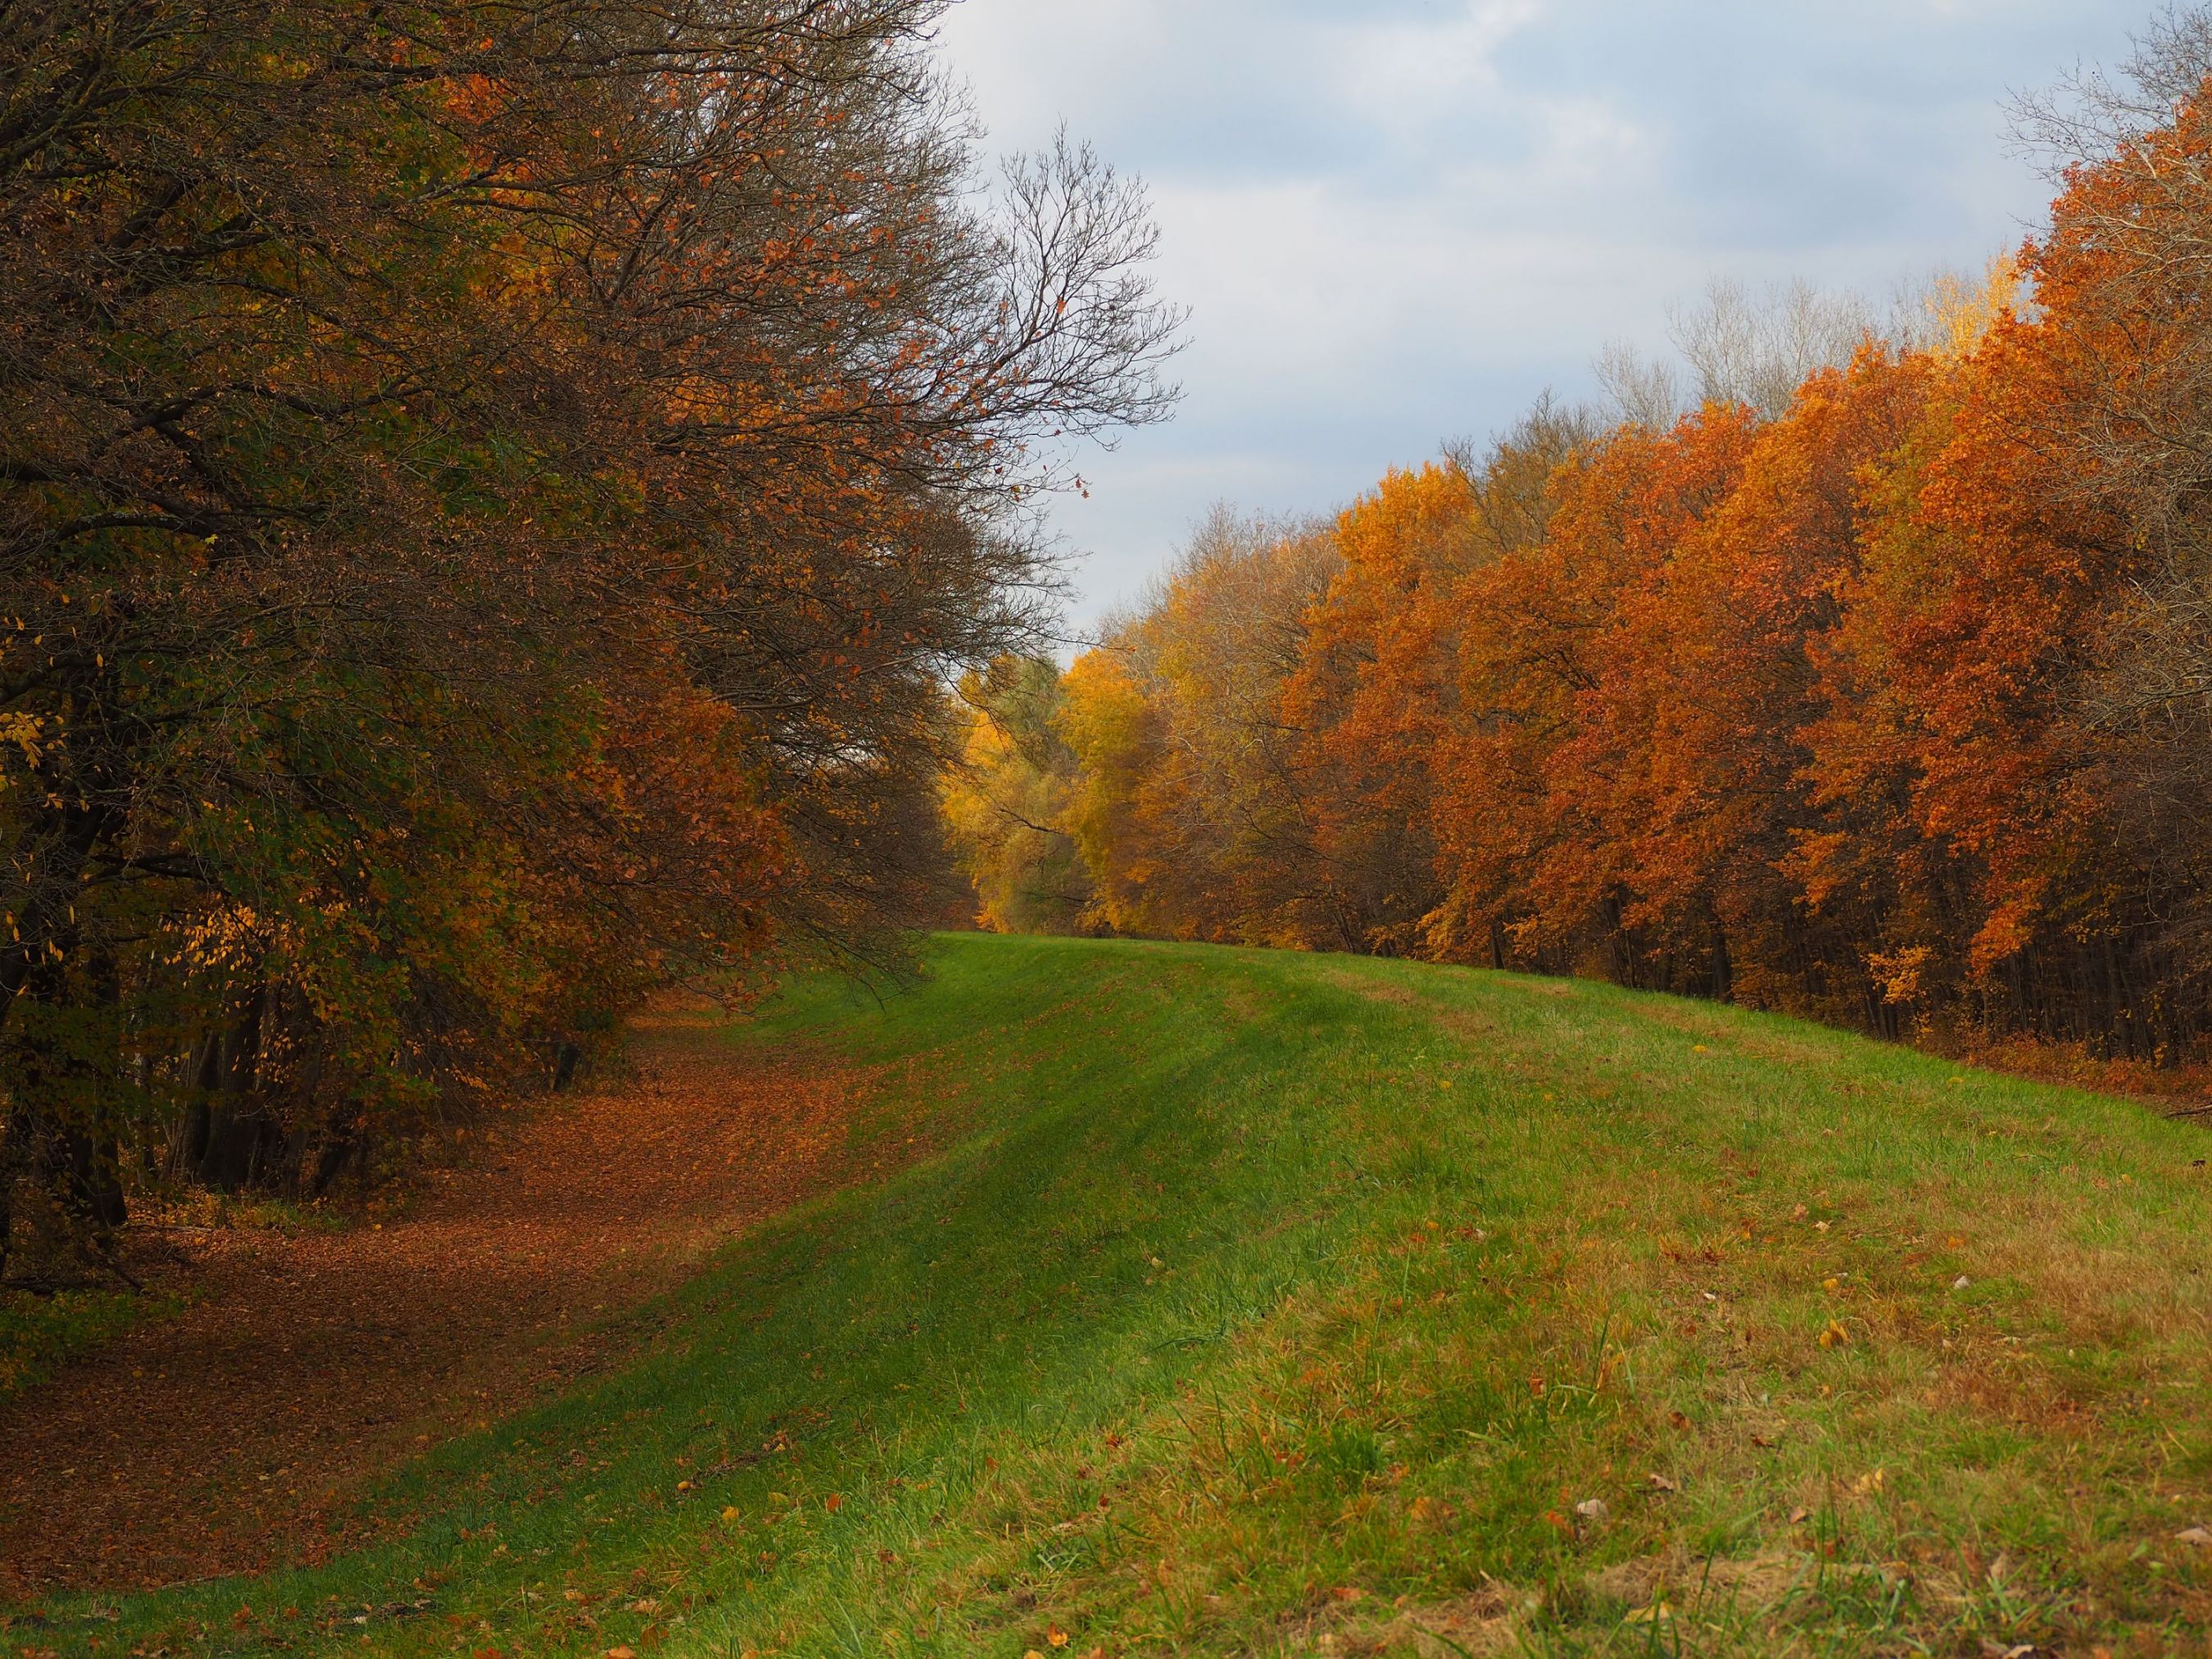 autumn path